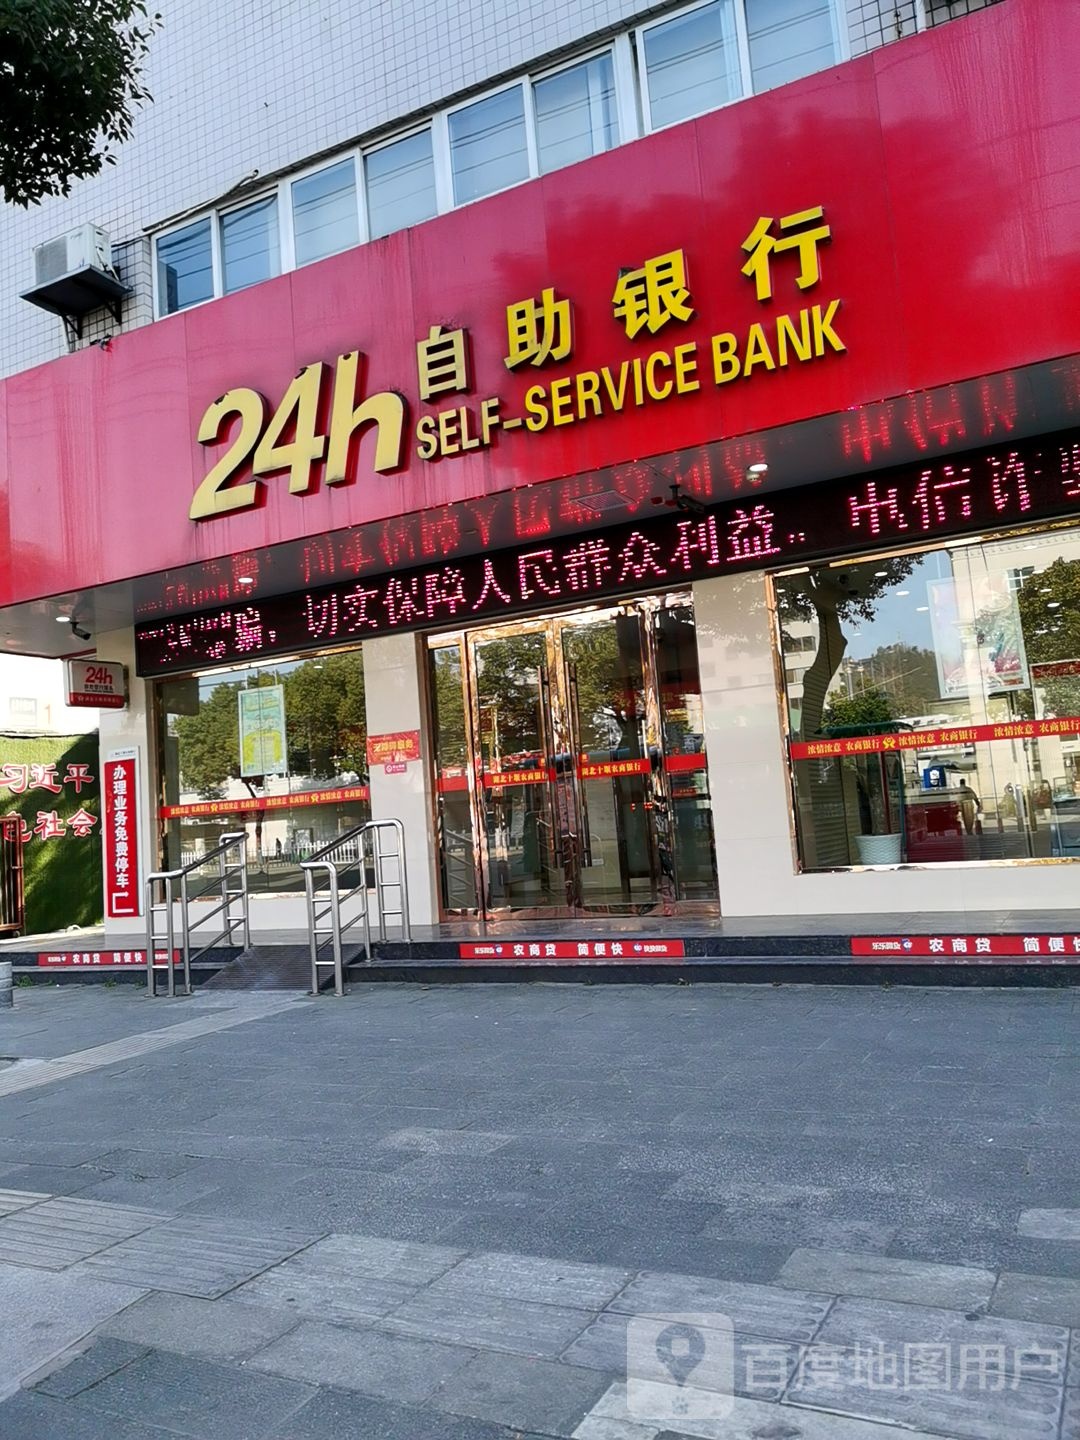 十堰农村商业银行24小时自助银行(白浪支行)